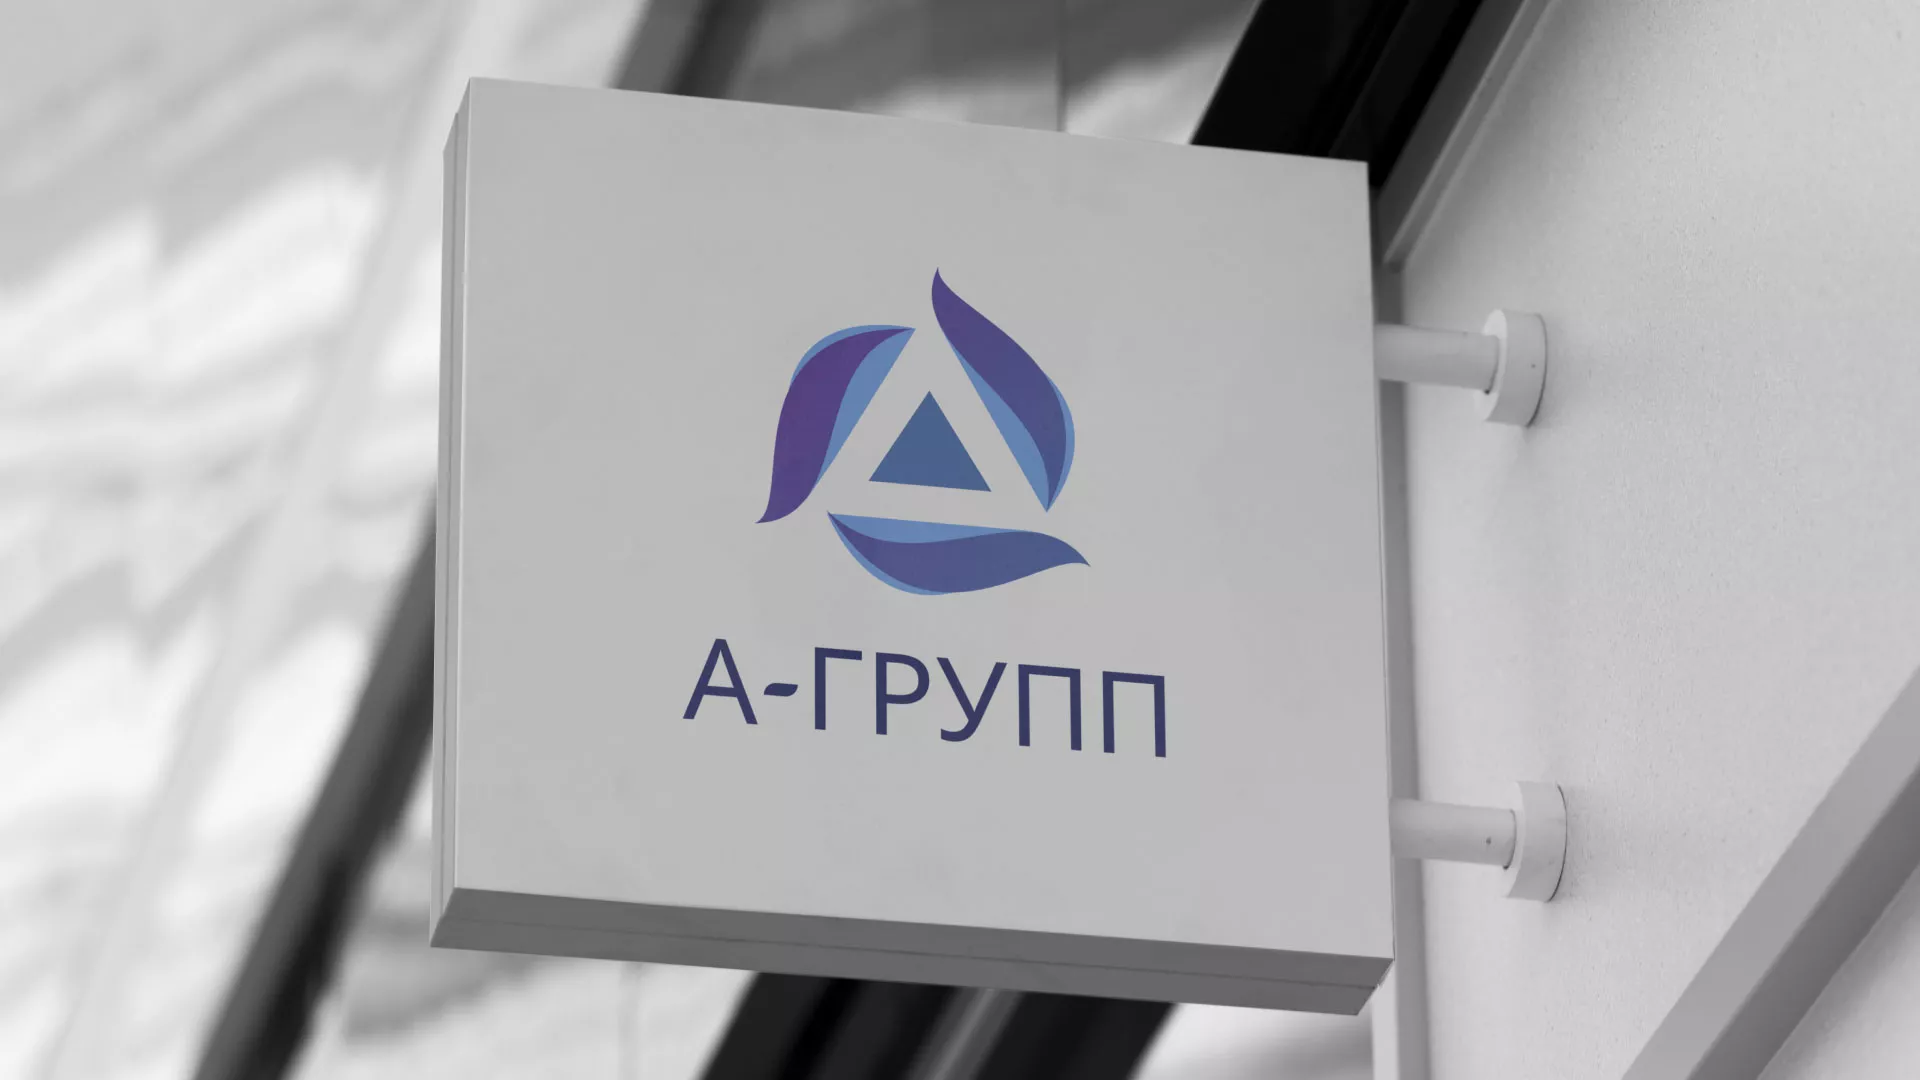 Создание логотипа компании «А-ГРУПП» в Гремячинске